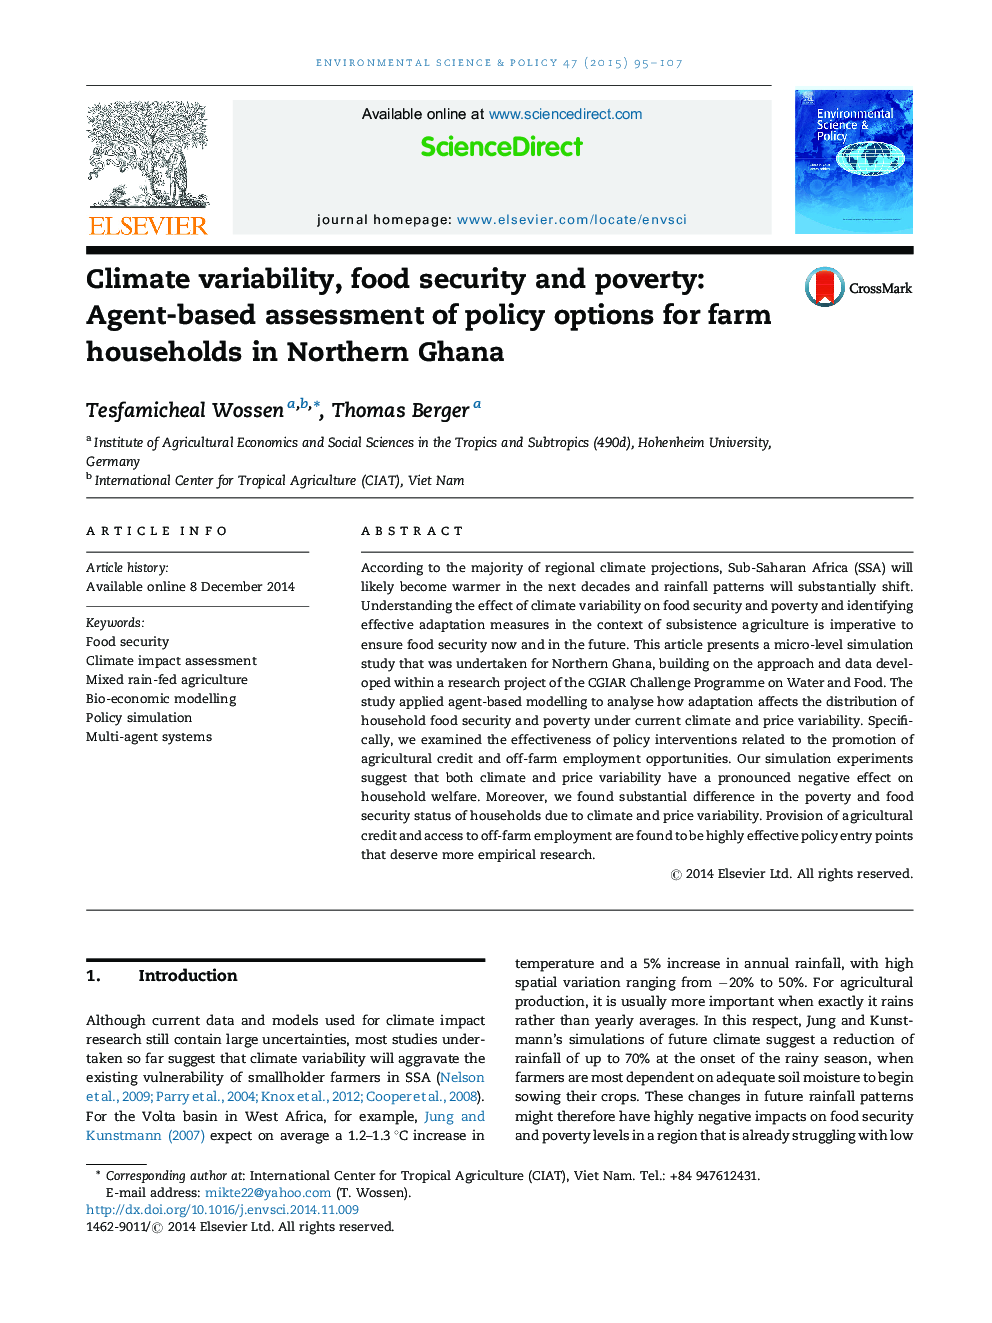 تنوع اقلیمی، امنیت غذایی و فقر: ارزیابی مبتنی بر مبانی گزینه های سیاست برای خانوارهای مزرعه در شمال غنا 